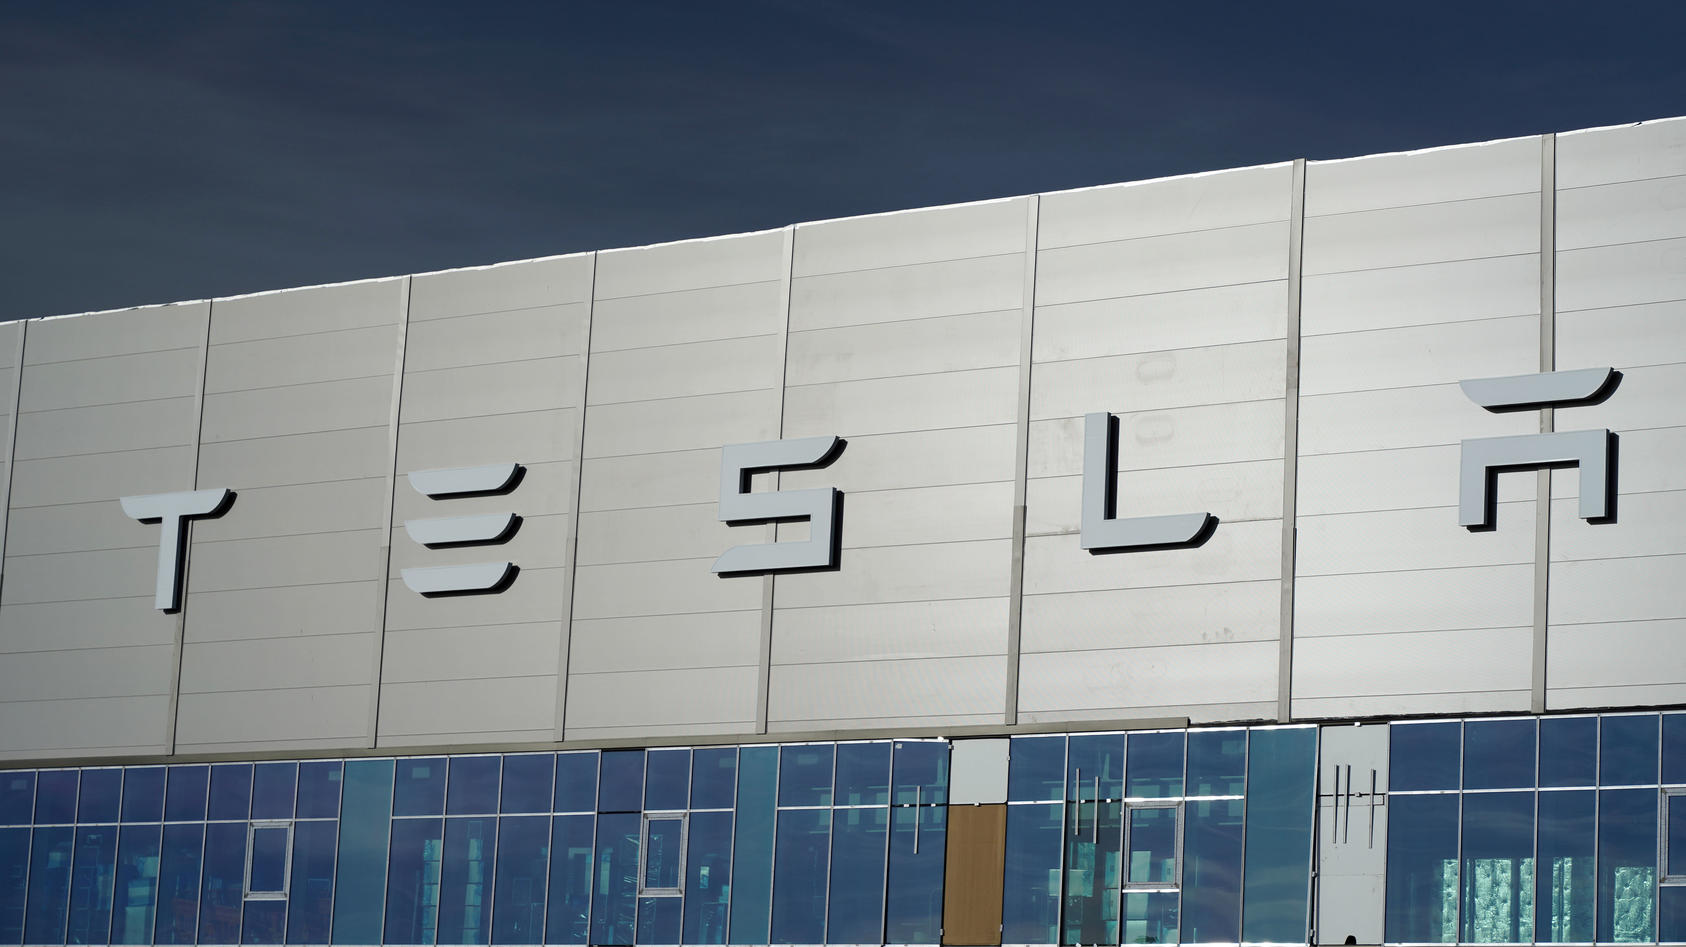 Nach Verzögerung wegen umweltrechtlicher Genehmigungsverfahren ist die Auto-Produktion von Tesla in der Gigafactory 4 jetzt mit voller Betriebsgenehmigung gestartet. Laut jüngsten Produktionszahlen verlassen inzwischen pro Woche 2.000 Autos das Werk.